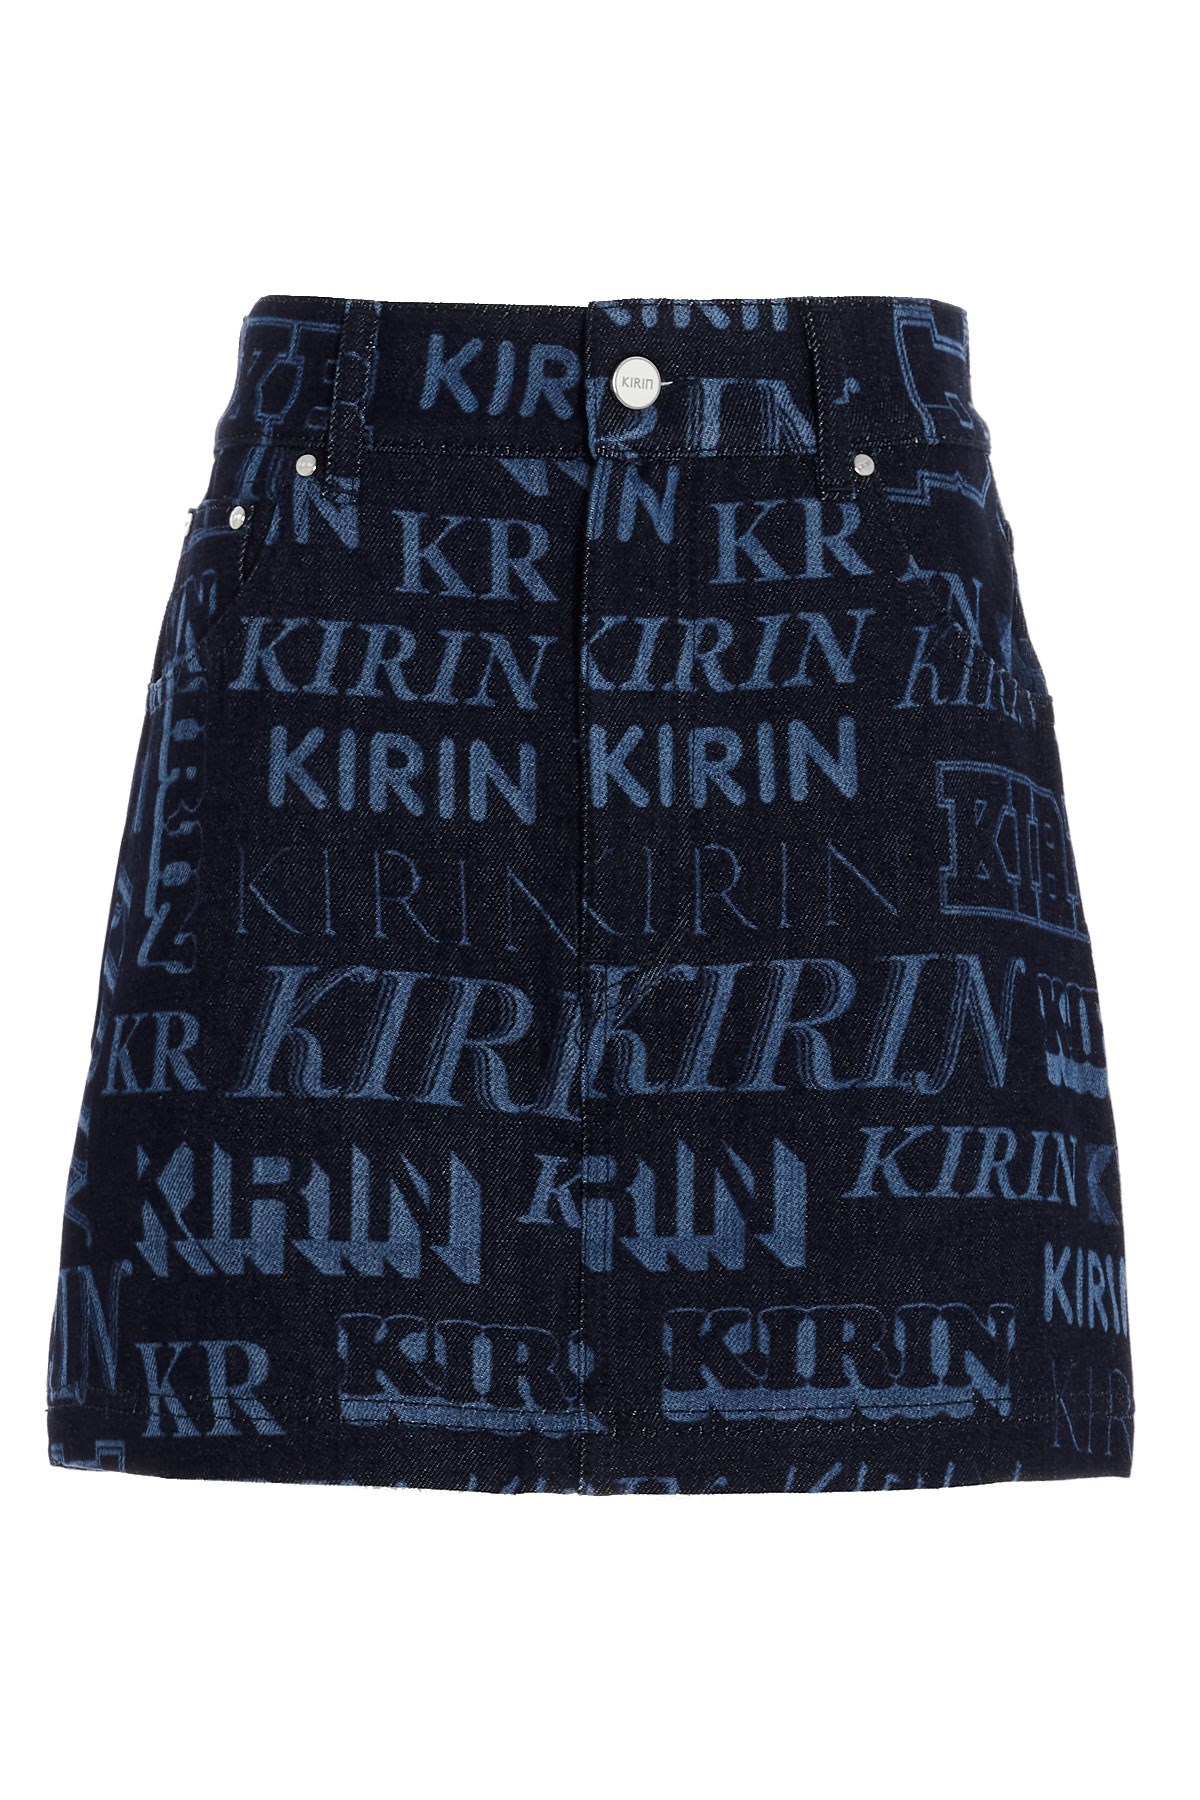 KIRIN PEGGY GOU 'Laser' Print Denim Skirt